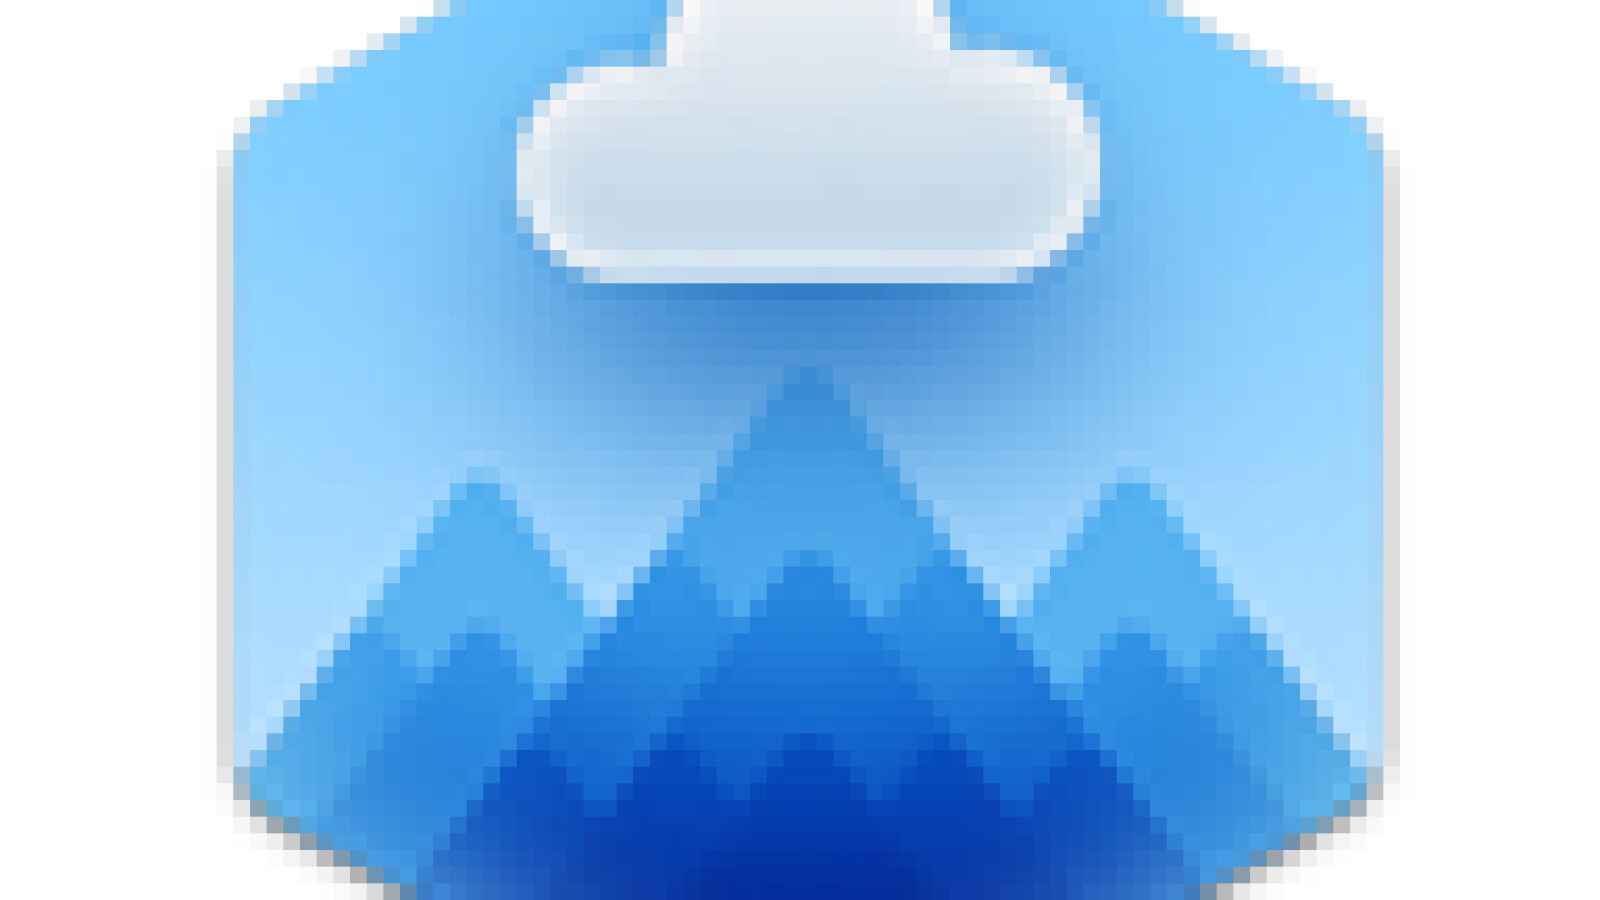 cloudmounter for windows 10